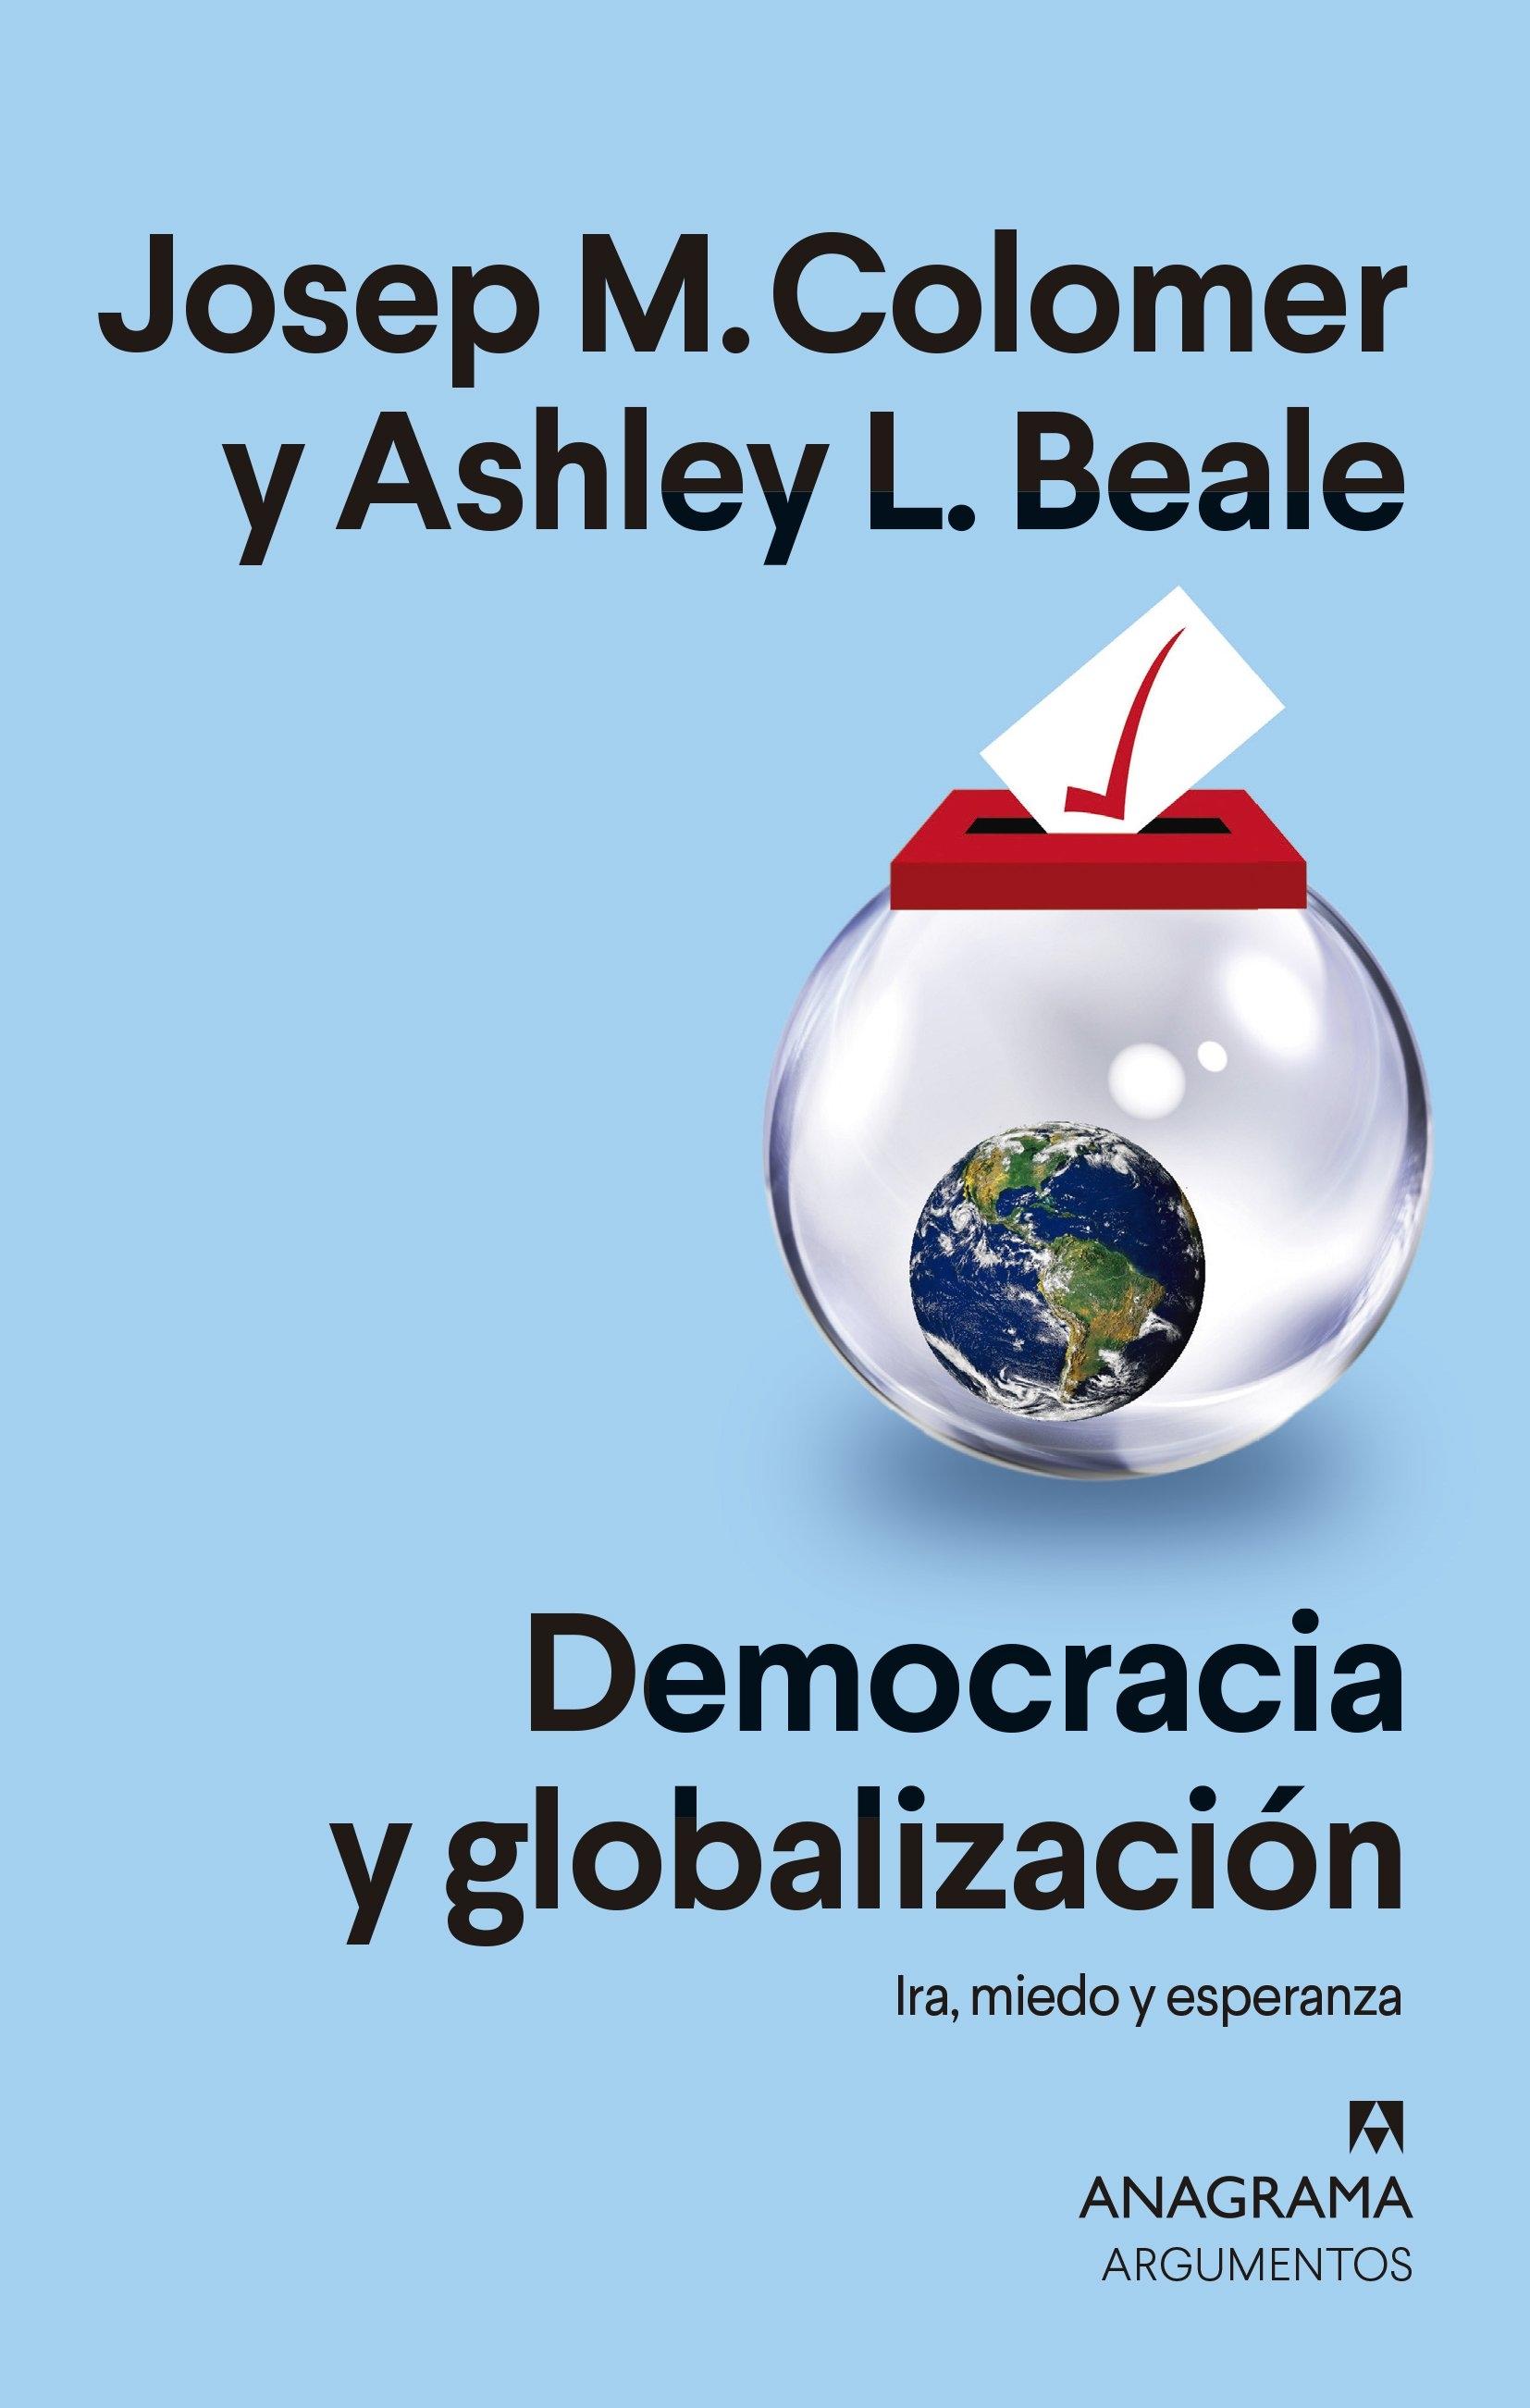 Democracia y globalización "Ira, miedo y esperanza". 